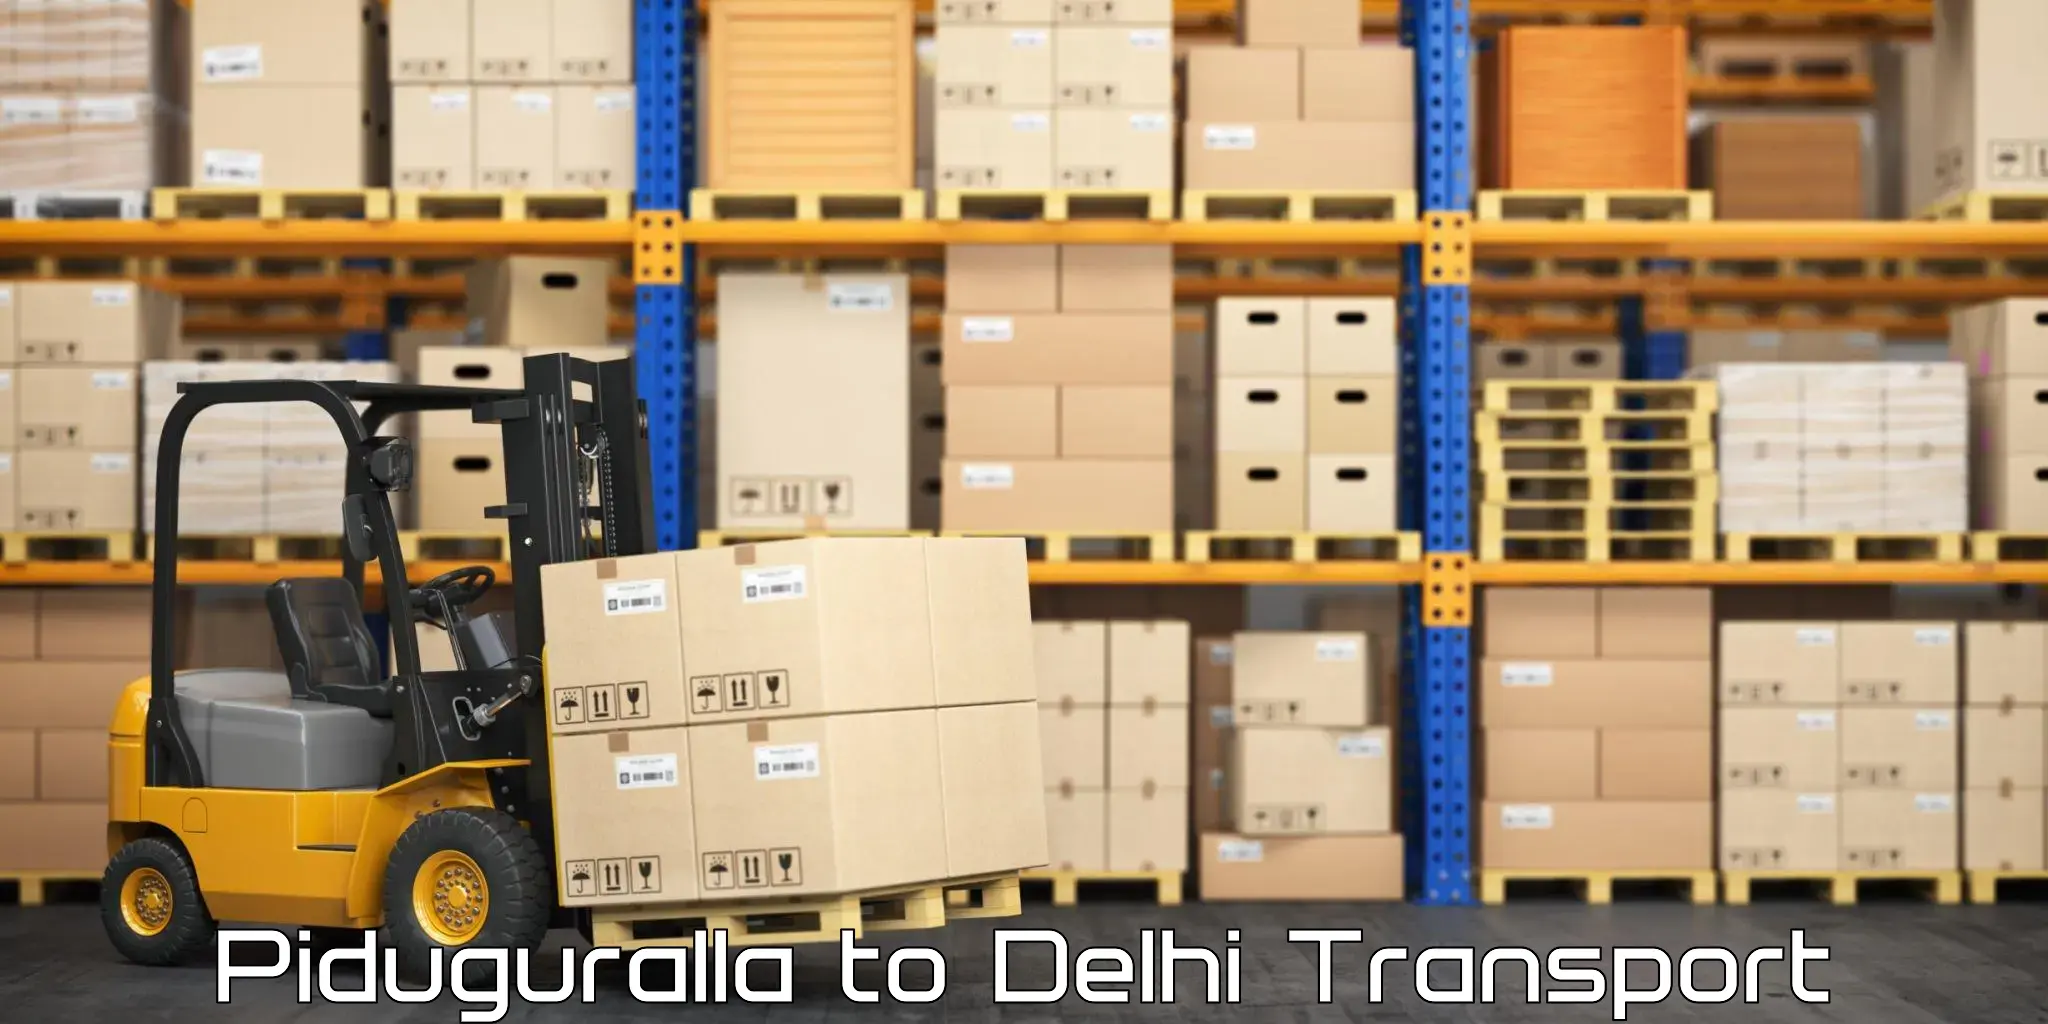 Pick up transport service Piduguralla to East Delhi